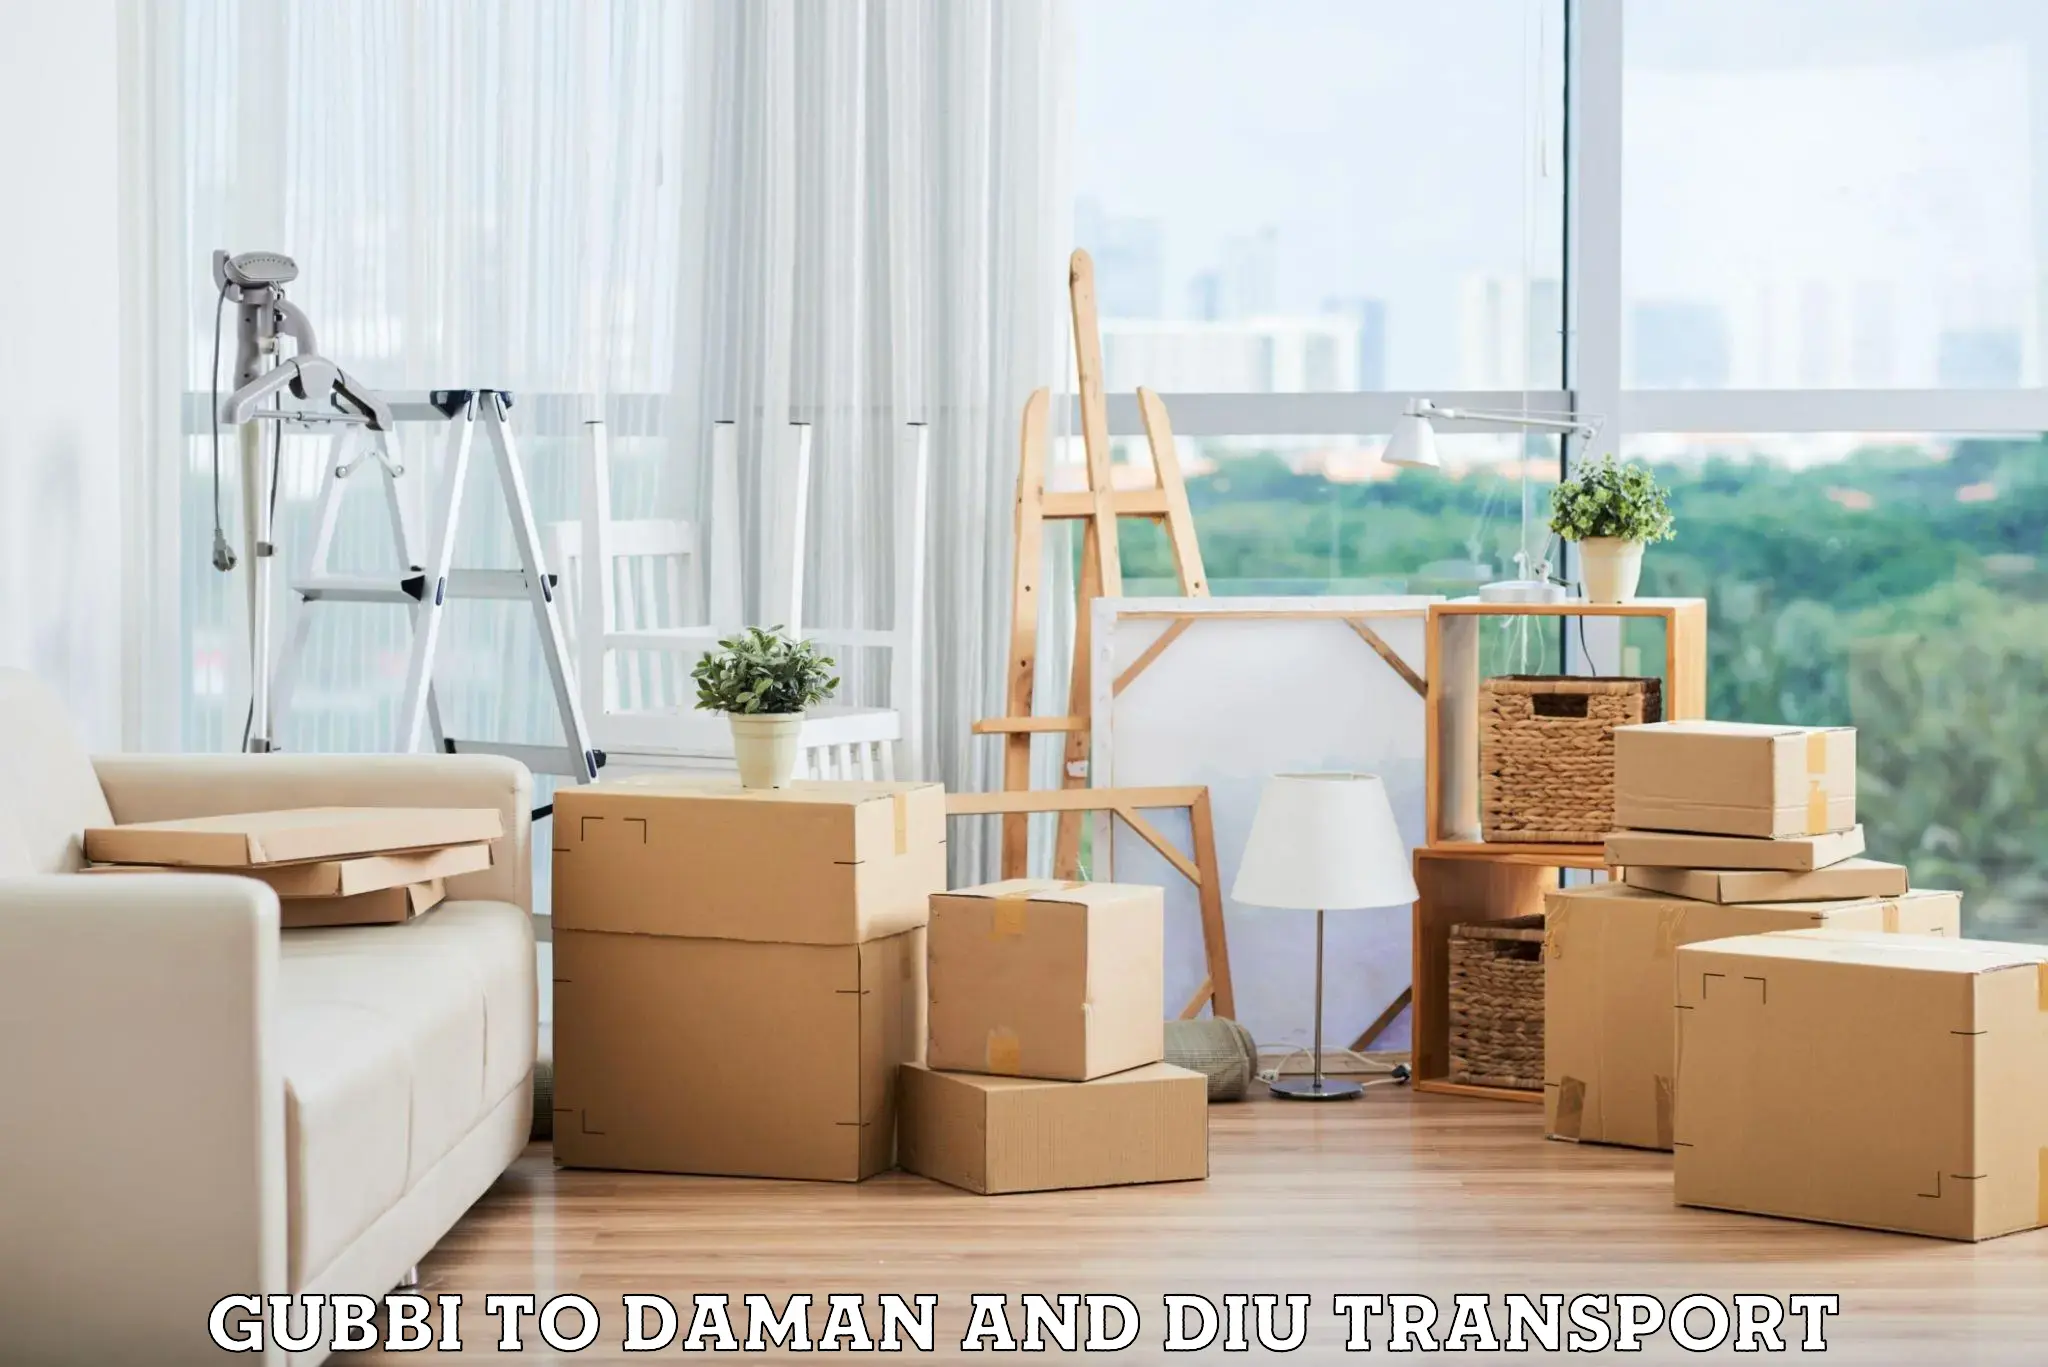 Furniture transport service Gubbi to Daman